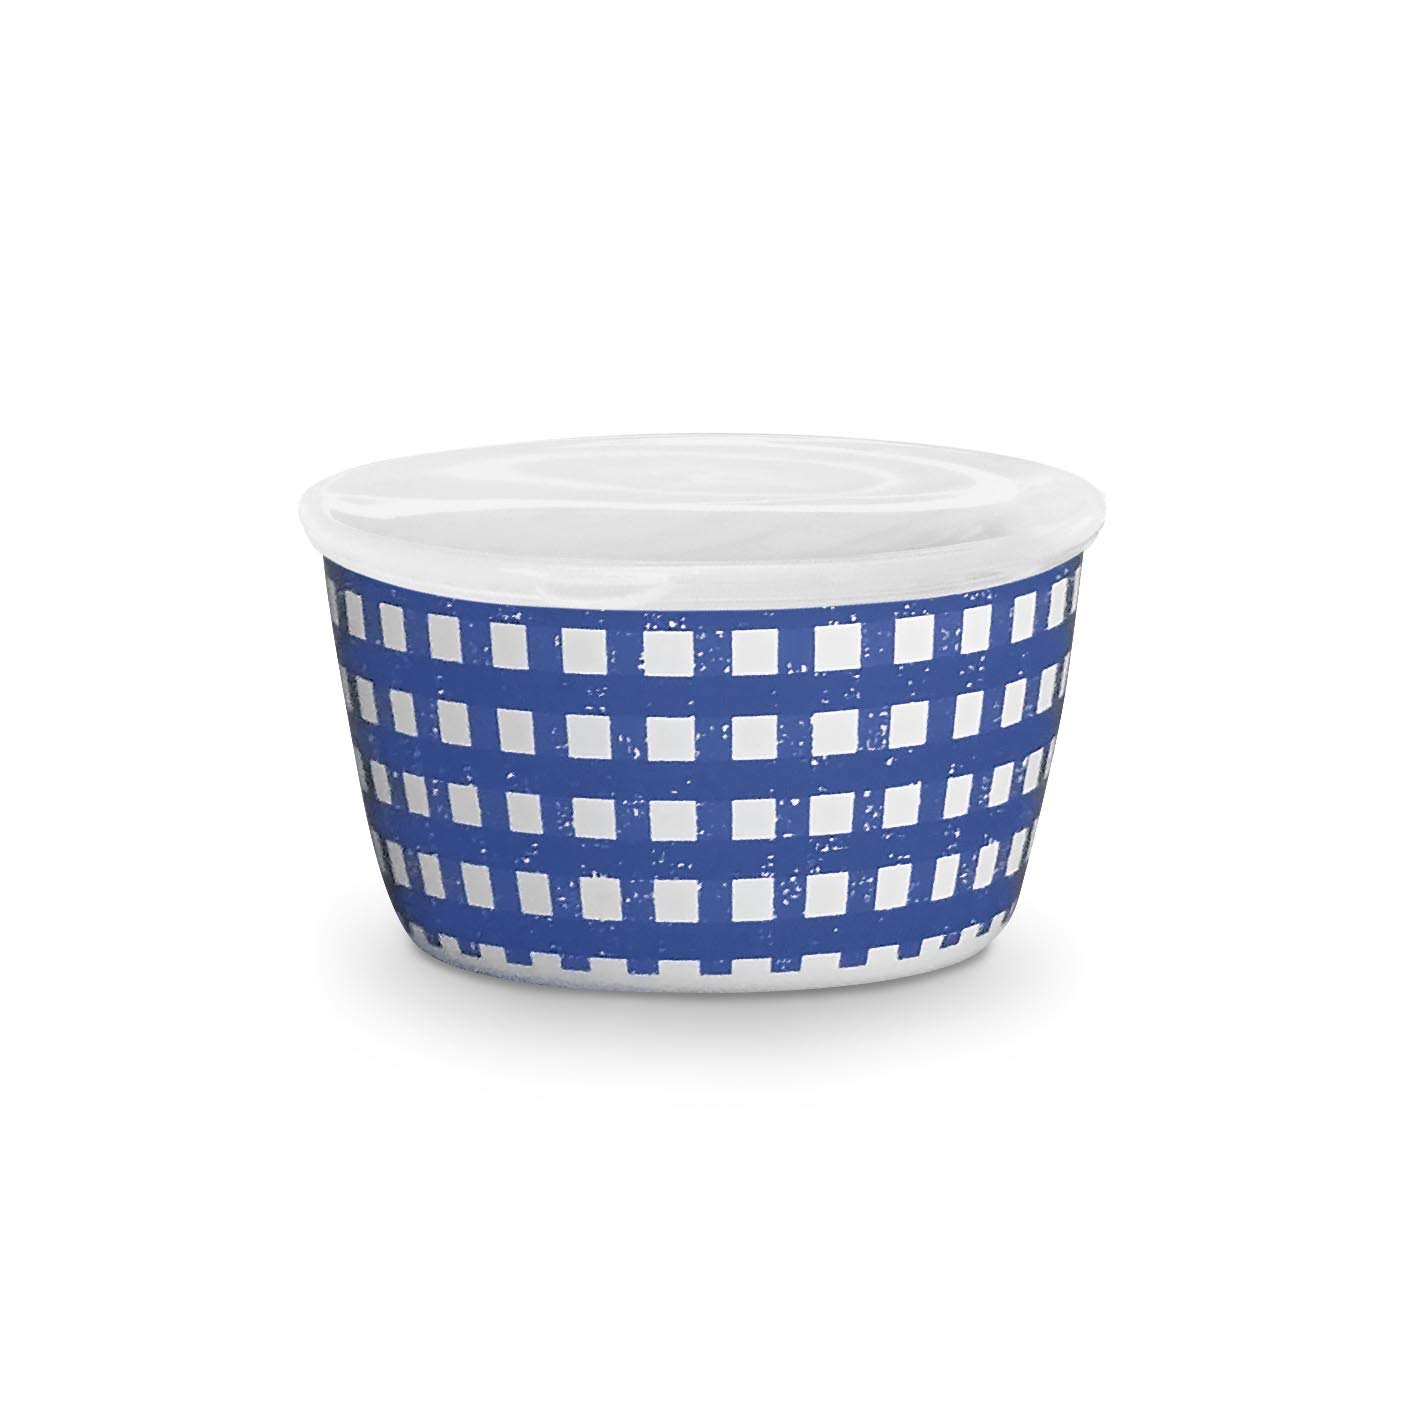 TarHong Homemade Navy Speckle and Gingham Set of 3 Lidded Bowls, 12 oz, 158 oz, 160 oz, Melamine